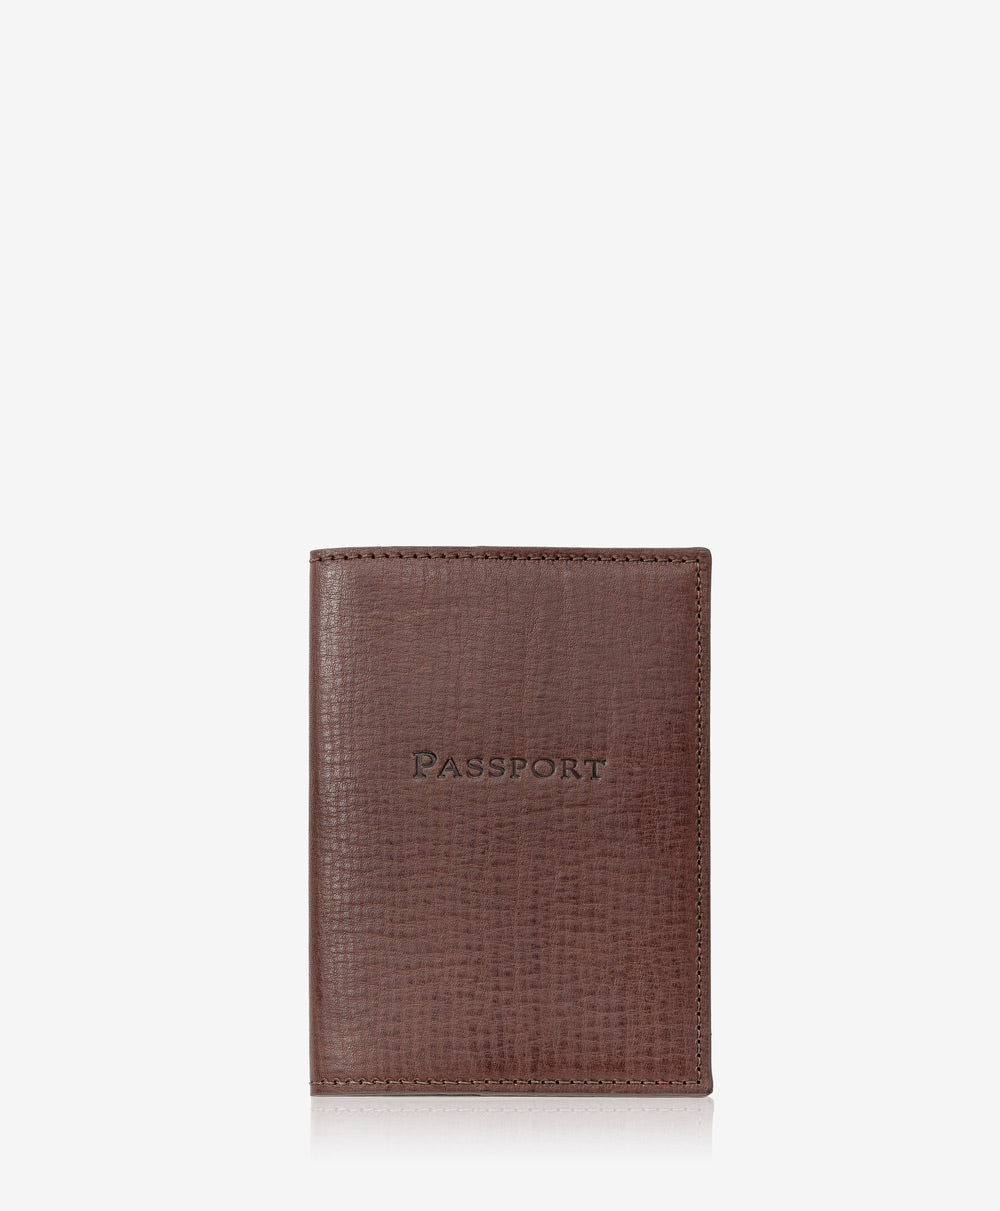 GiGi New York Passport Case Brown Vachetta Leather